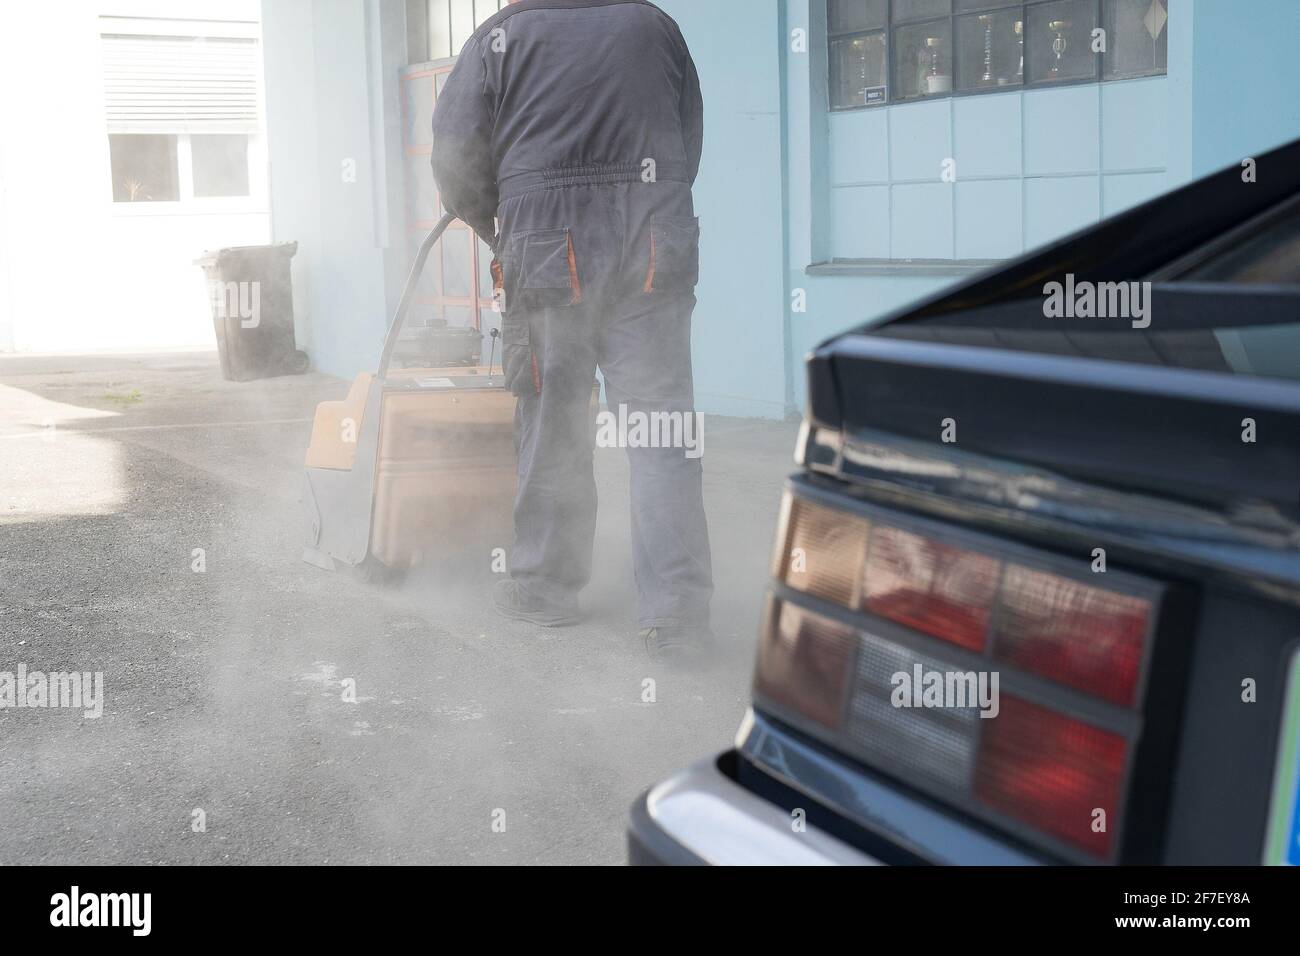 Una persona sta spingendo una spazzatrice industriale alimentata a benzina arancione parcheggio in asfalto sporco nel tentativo di pulire da detriti e sabbia Foto Stock